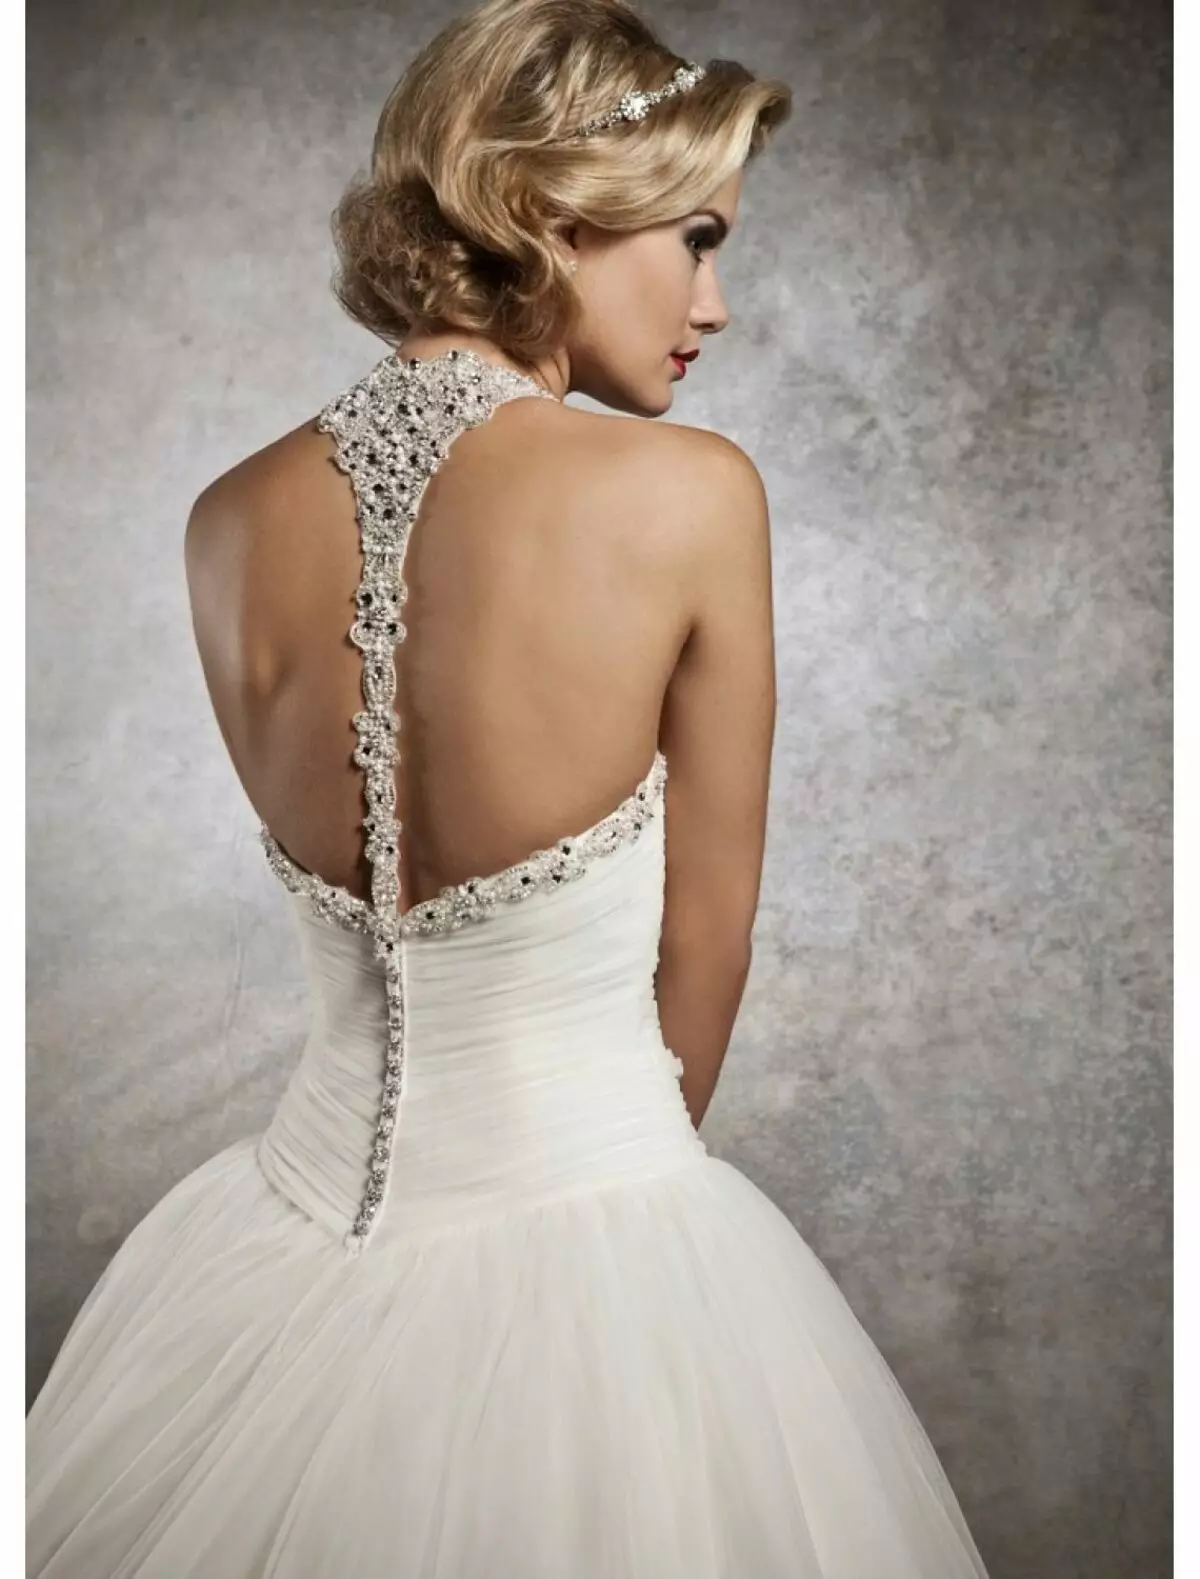 لباس عروسی با تسمه بر روی گردن و پشت باز